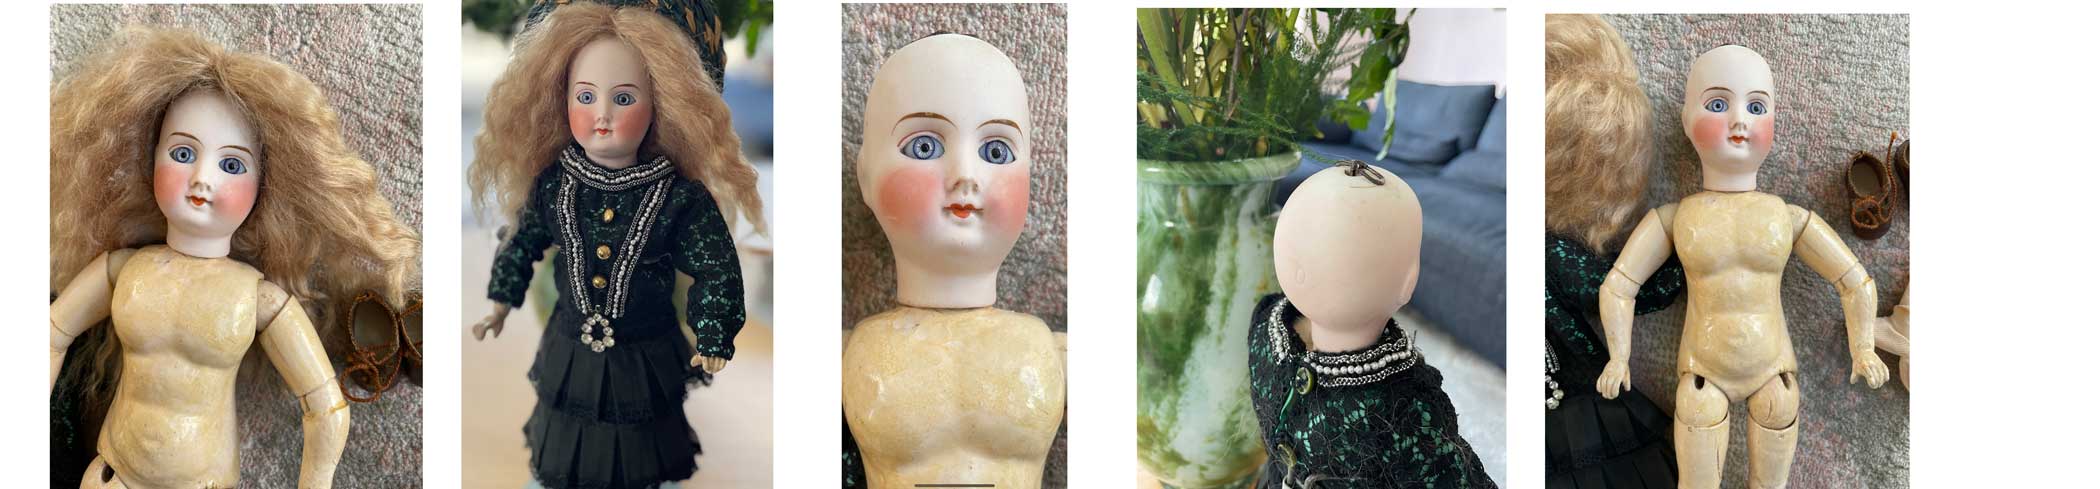 grot Portier masker Antiekepop.nl - Wij kopen en verkopen antieke poppen.